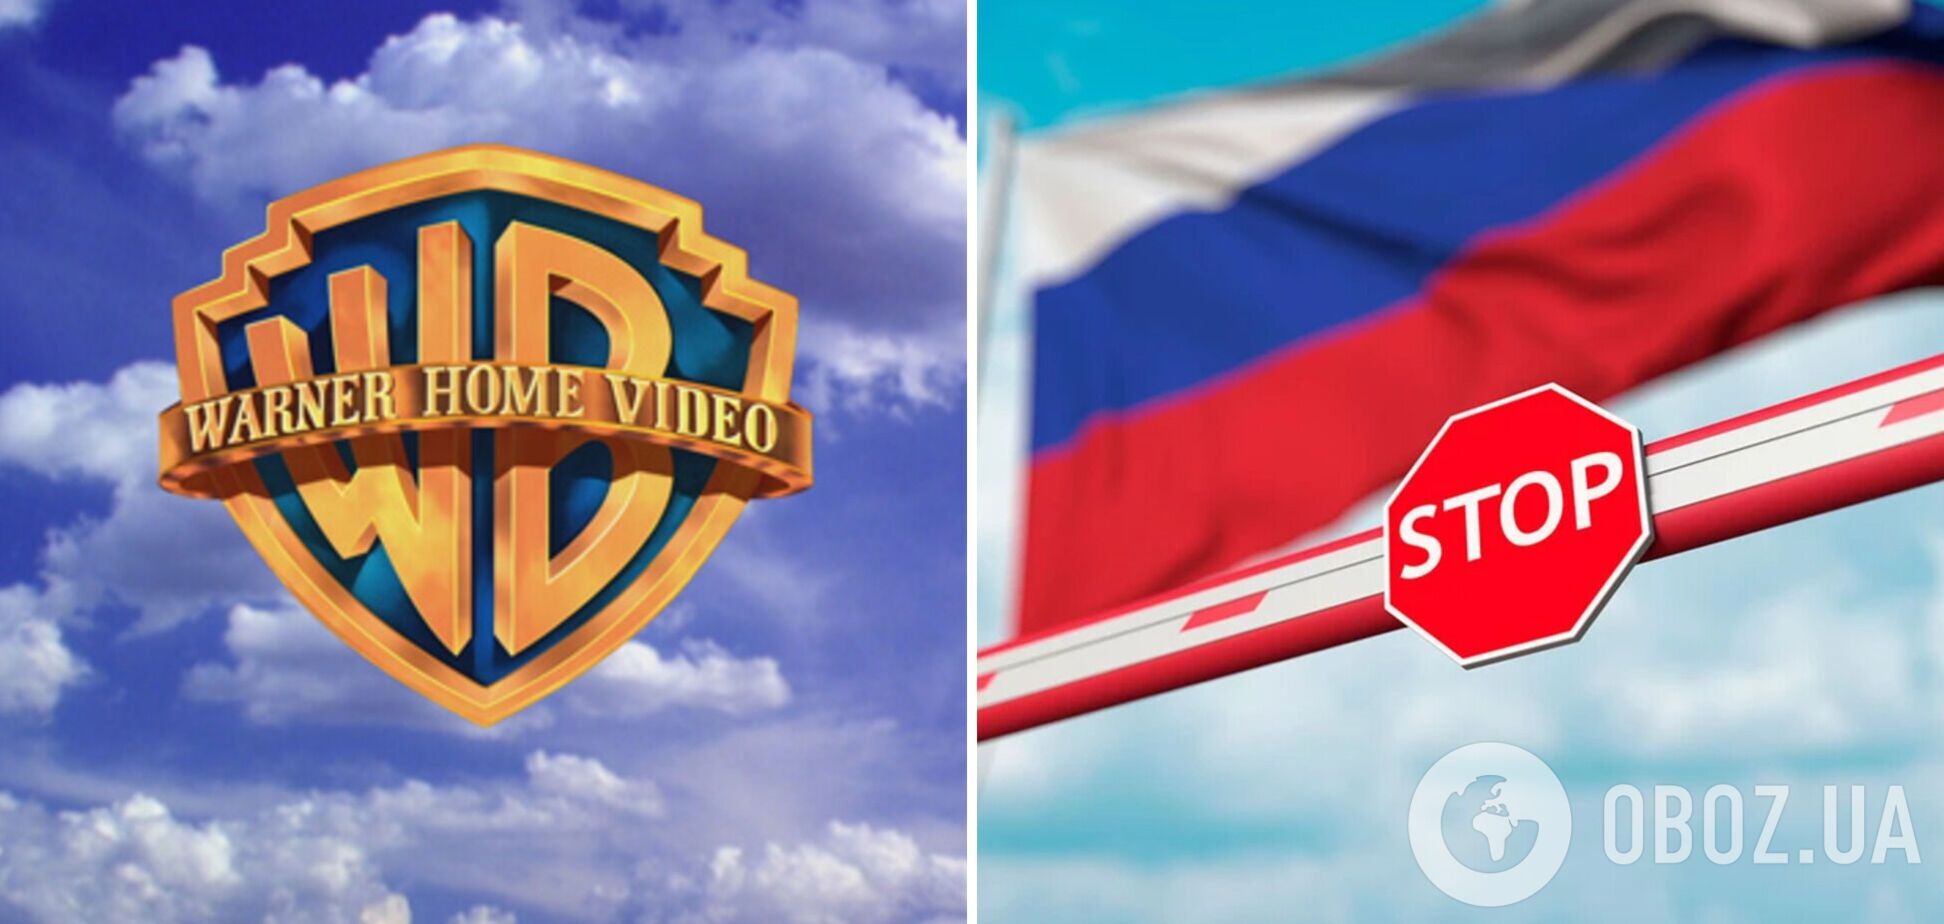 Warner Bros. запретила российским каналам транслировать свои фильмы, хотя срок лицензии еще не истек